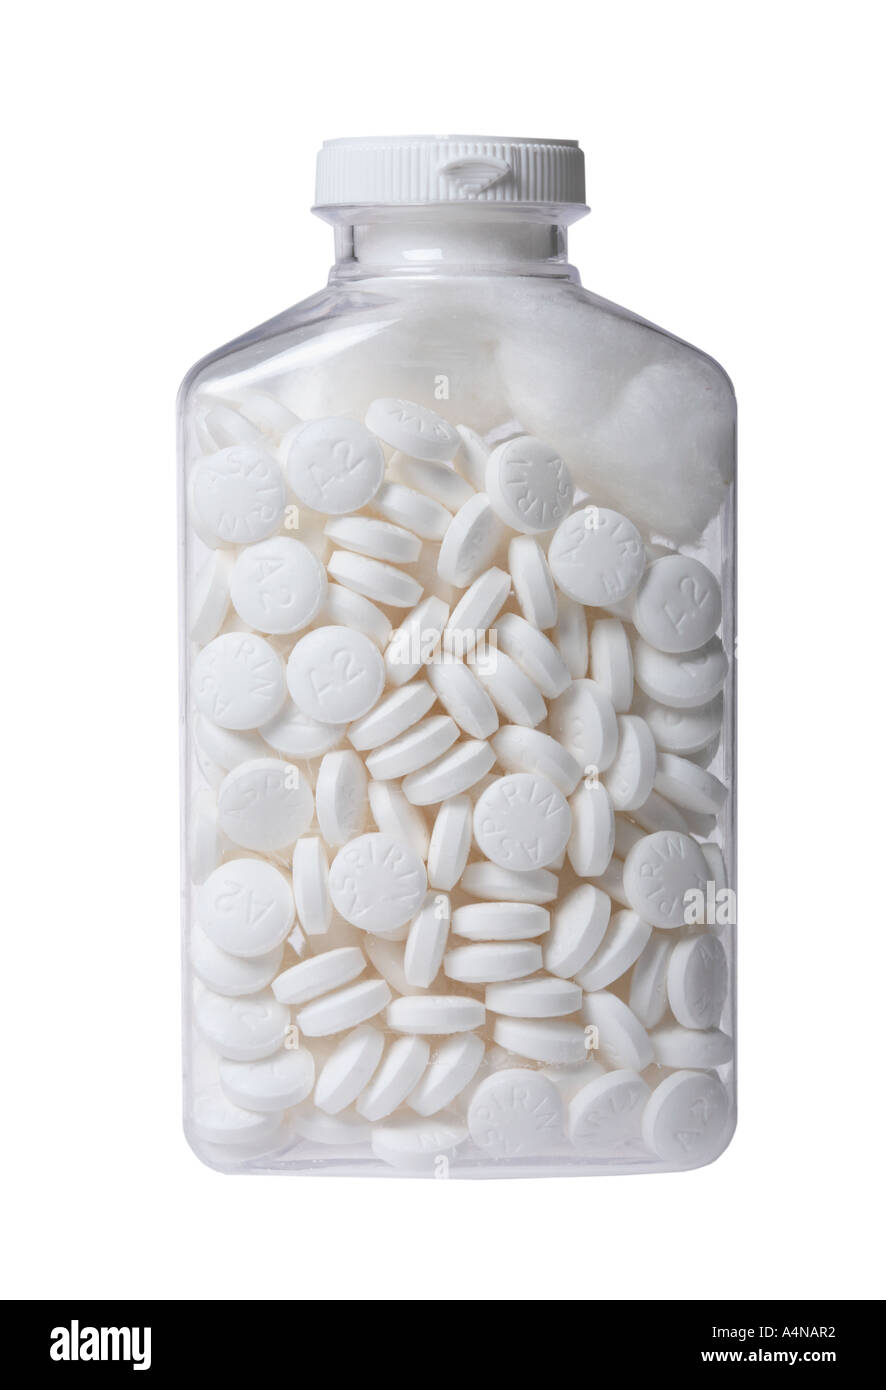 Aspirin bottle full of aspirin Stock Photo